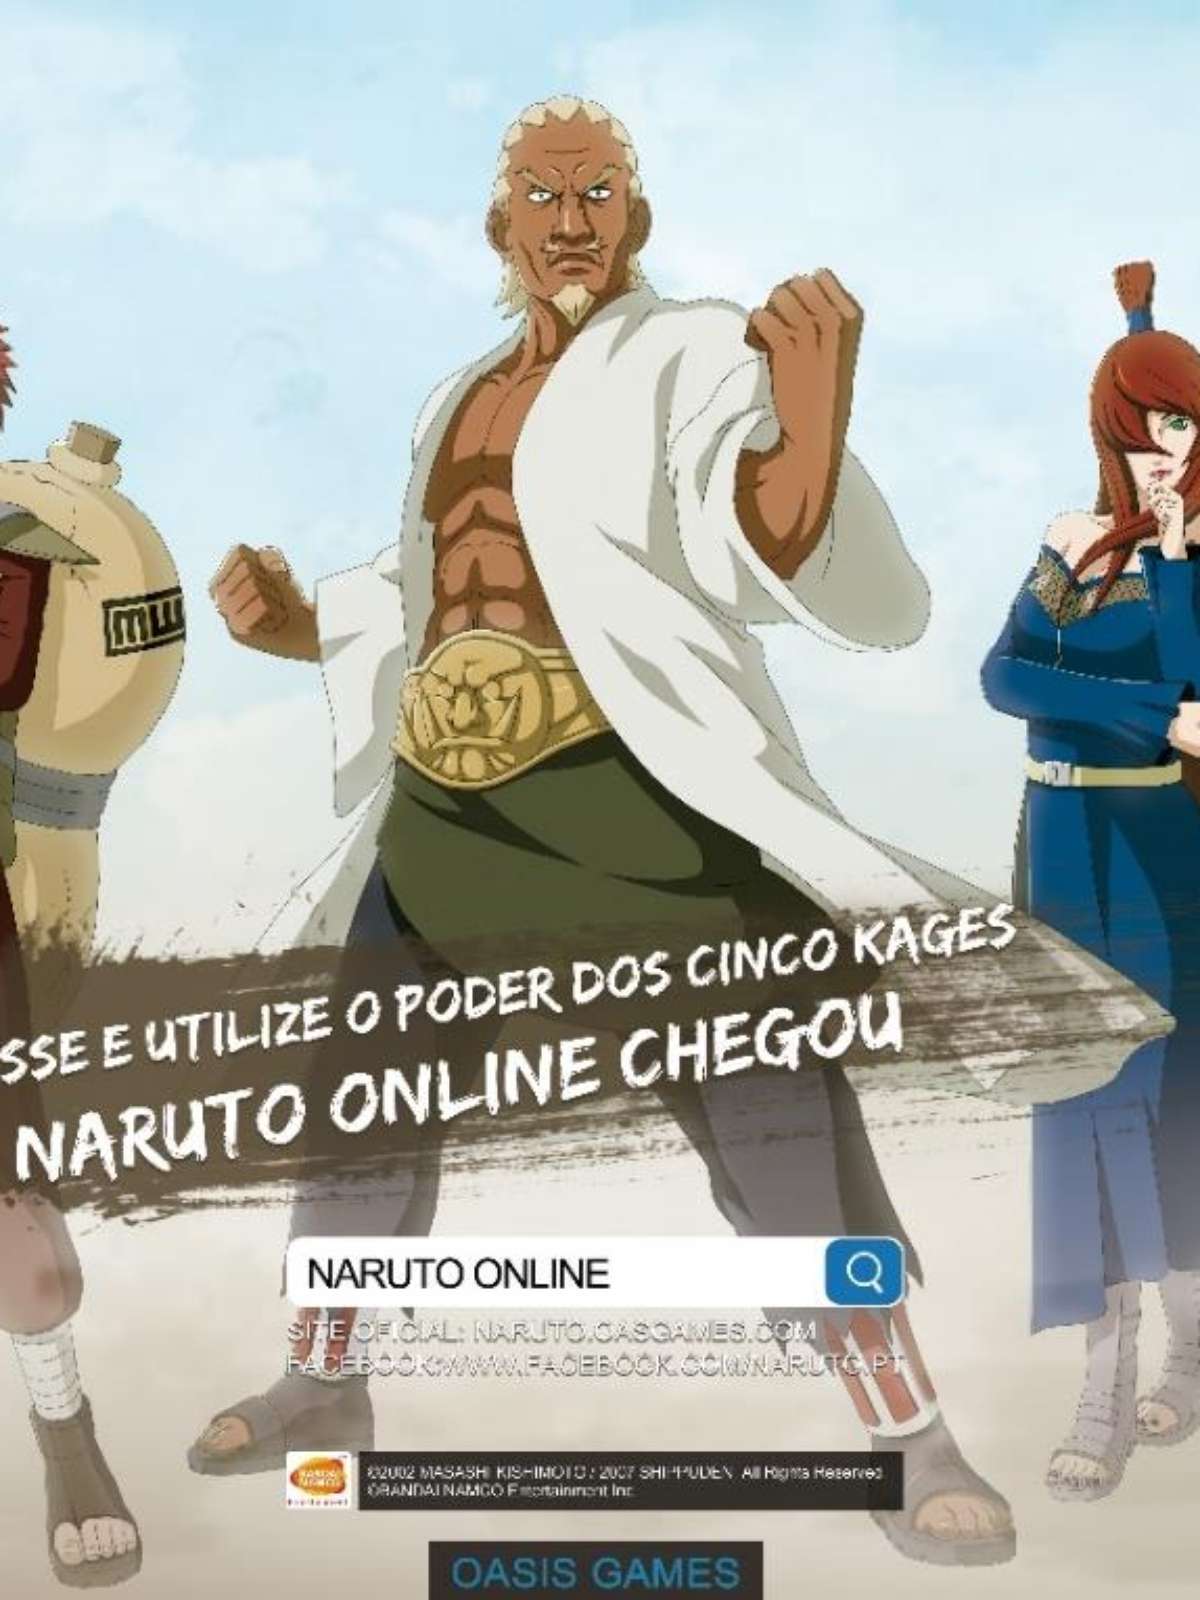 Naruto Online estreia na CCXP com Elcio Sodré como dublador de